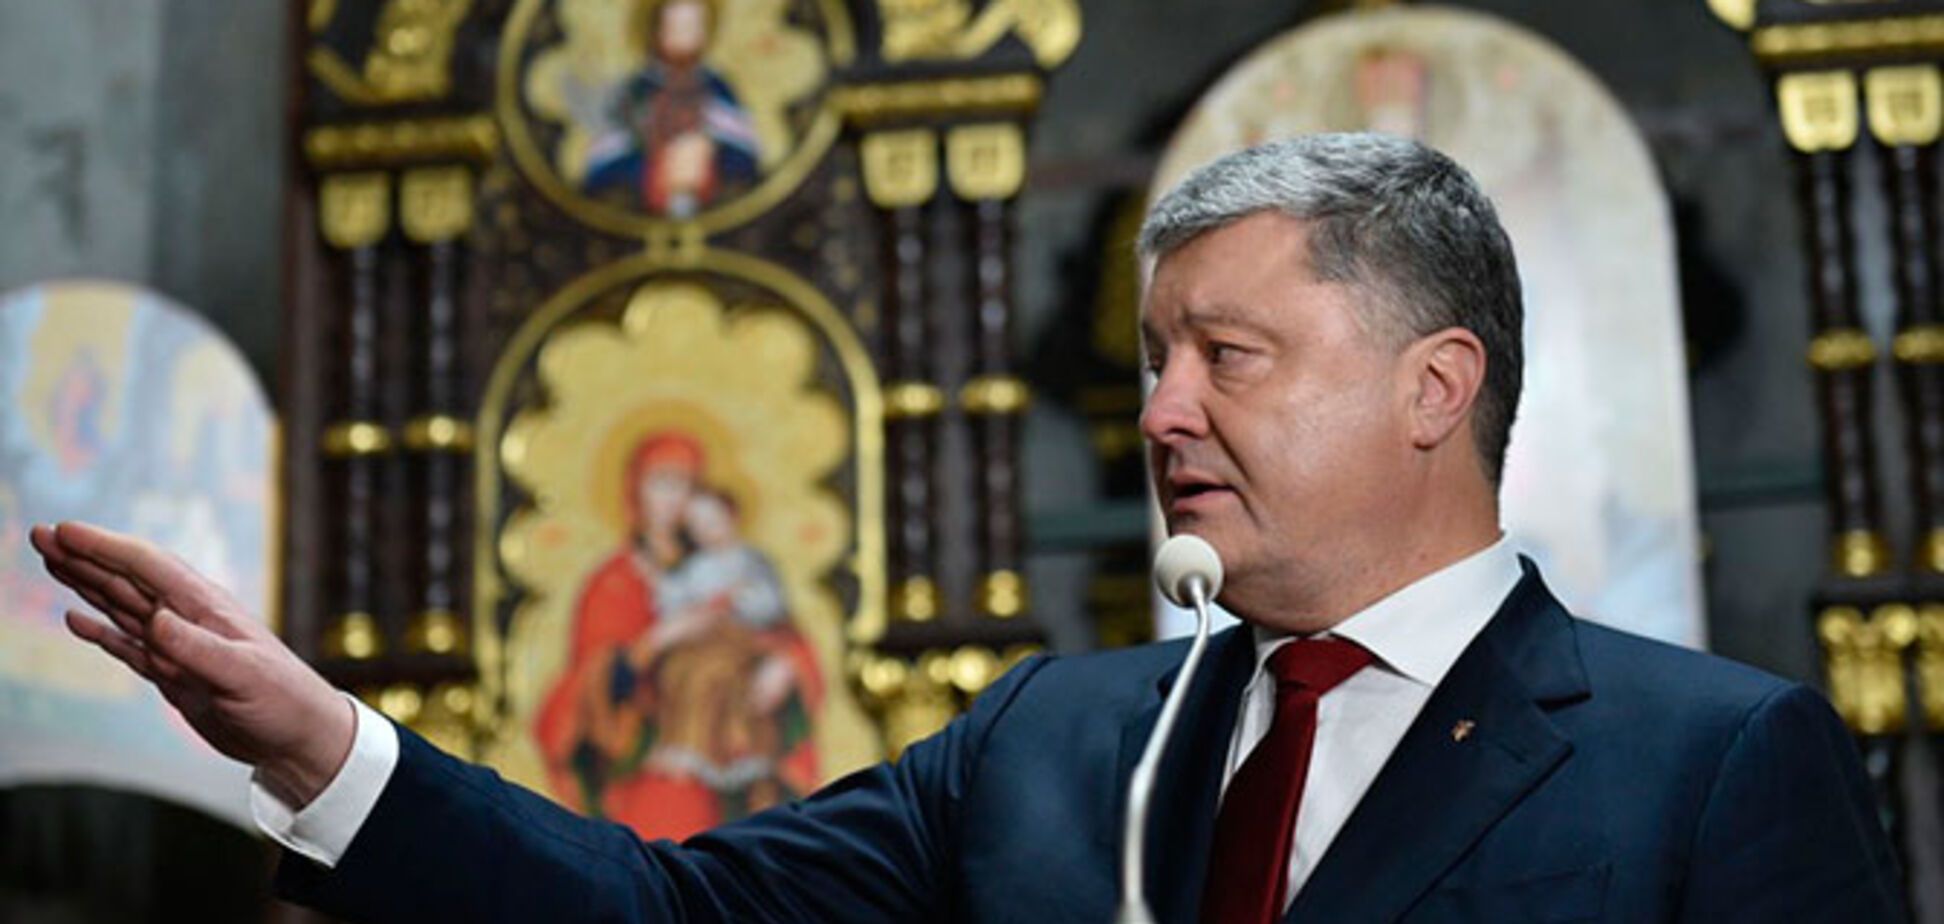 Единая церковь: стало известно о еще одной важной встрече Порошенко